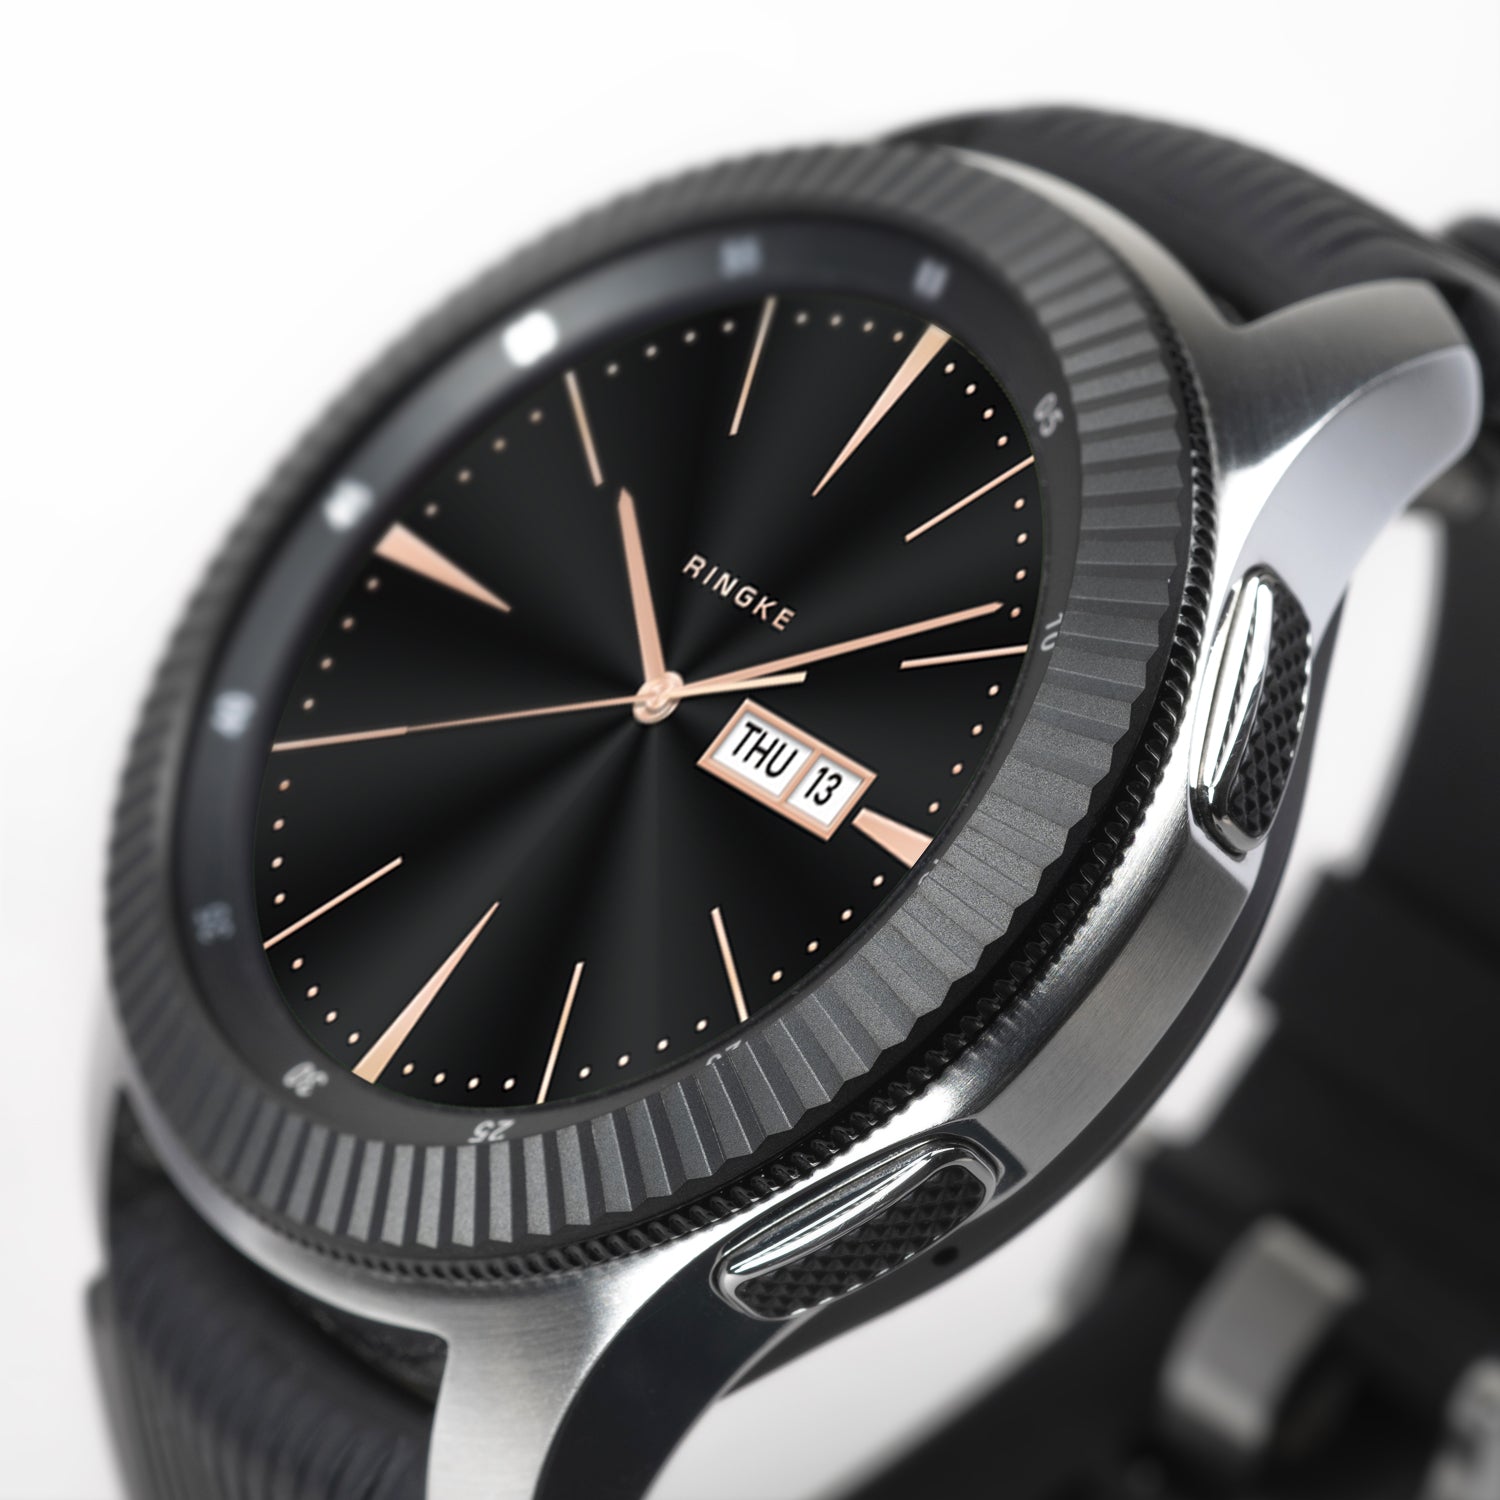 Galaxy Watch 46mm Ringke Bezel Styling 46-05 – Ringke Official Store